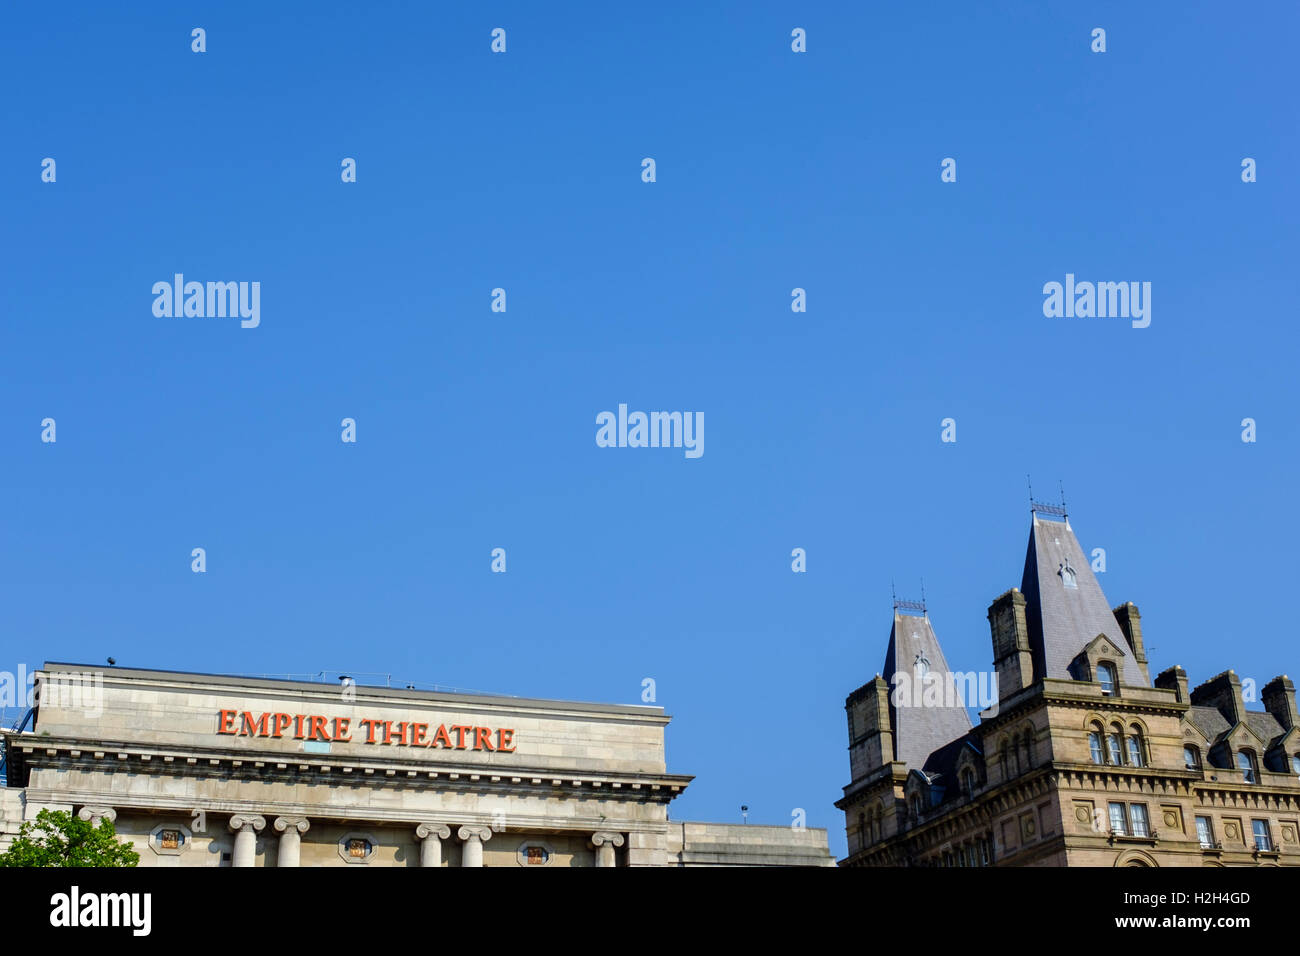 Empire Theatre, Liverpool, UK Stock Photo